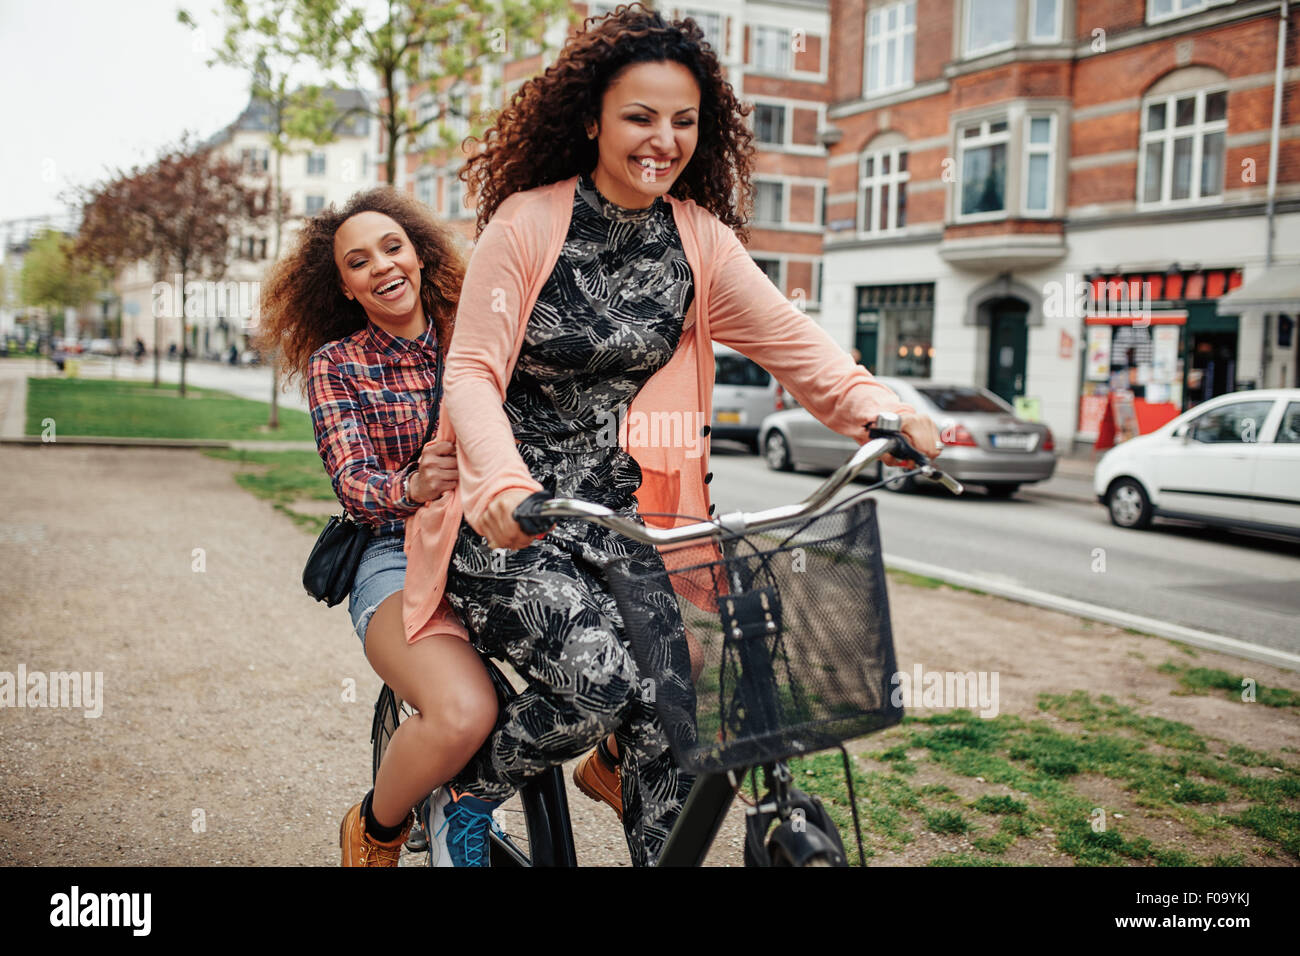 Deux jeunes femmes ensemble sur une location d'avoir du plaisir. Cheerful young girls enjoying cycle ride on city street. Banque D'Images